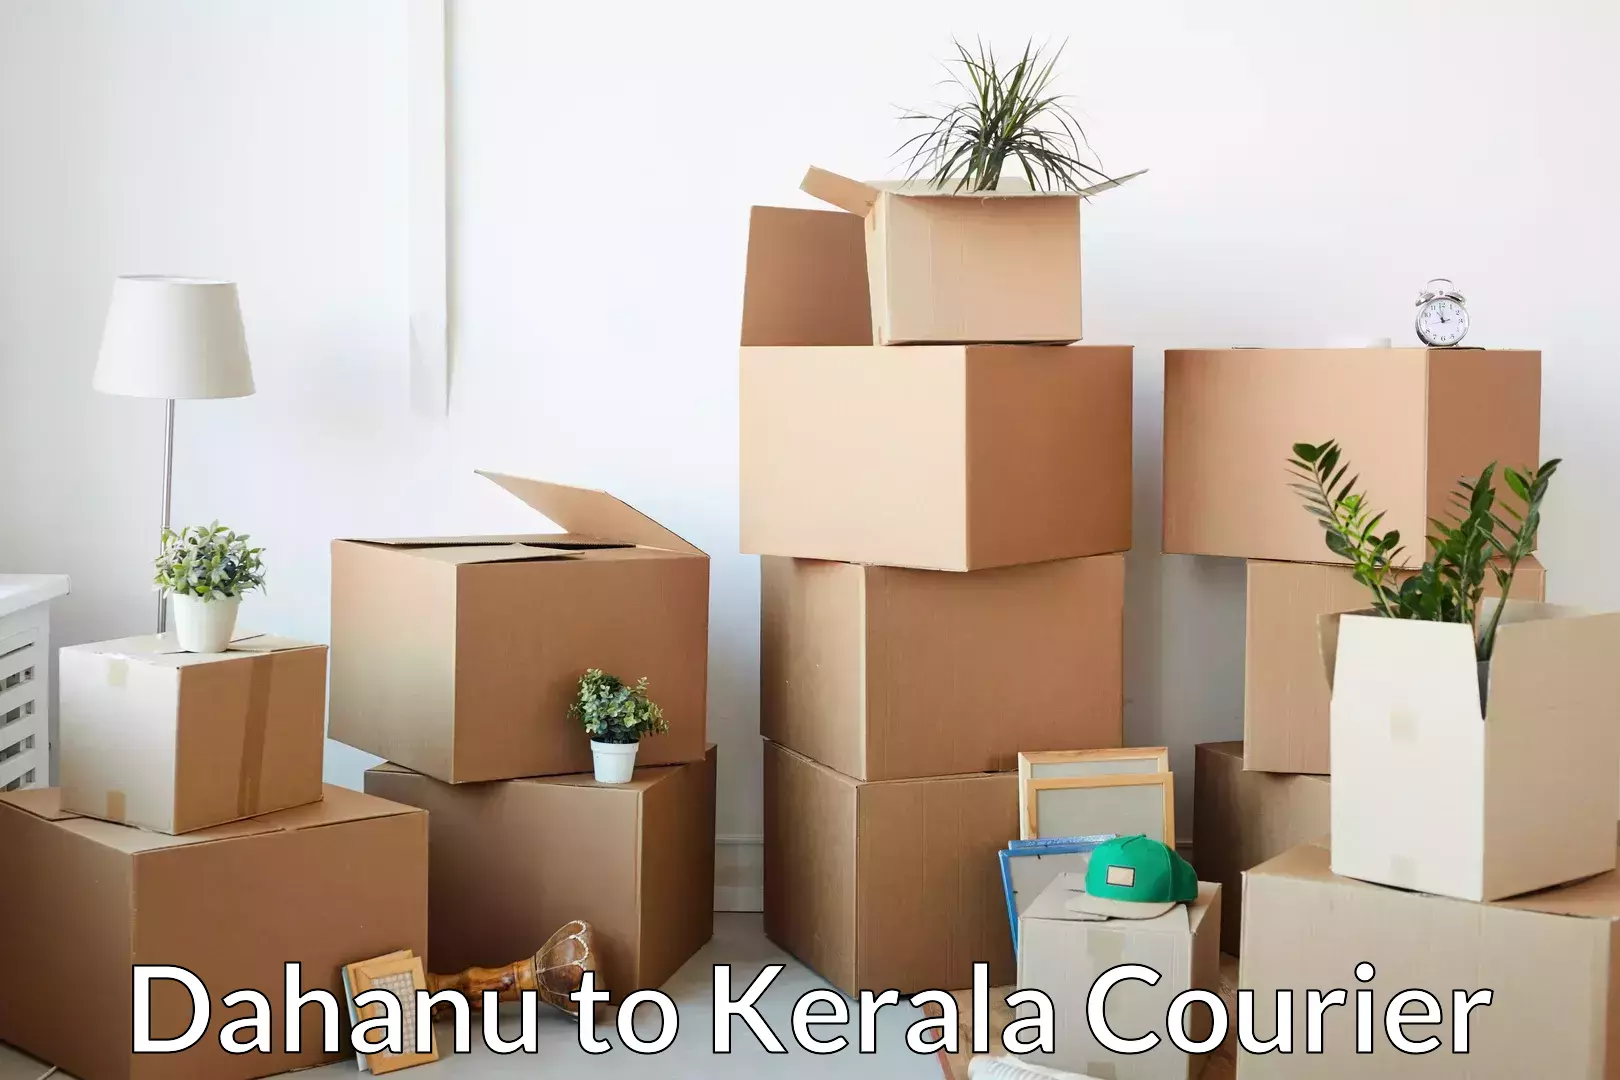 Specialized moving company Dahanu to Kerala